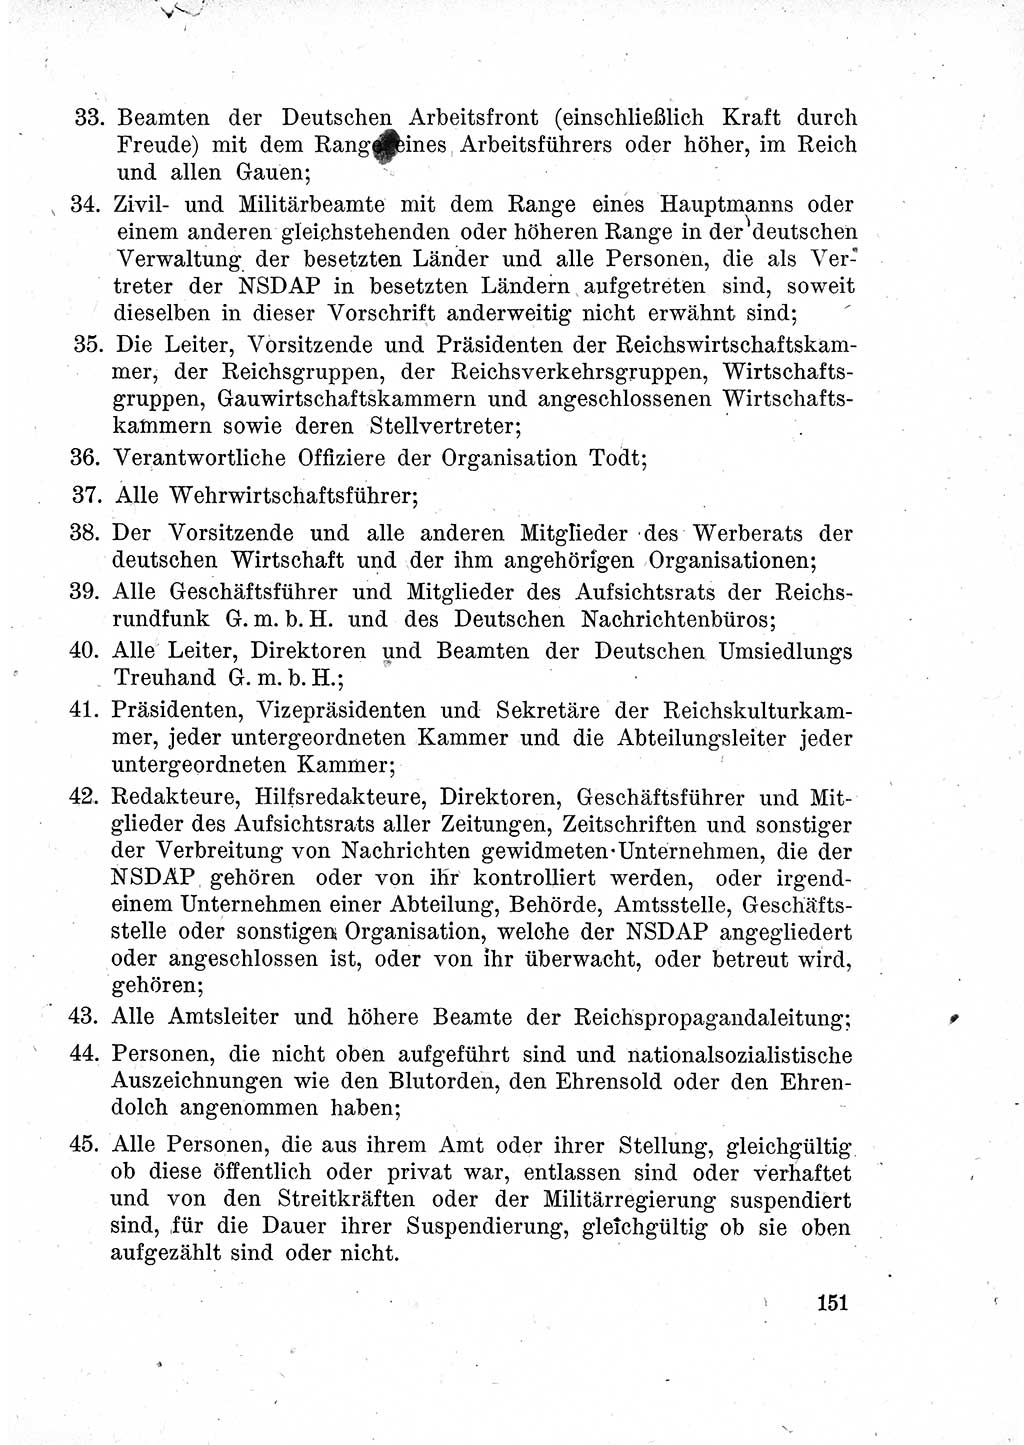 Das Recht der Besatzungsmacht (Deutschland), Proklamationen, Deklerationen, Verordnungen, Gesetze und Bekanntmachungen 1947, Seite 151 (R. Bes. Dtl. 1947, S. 151)